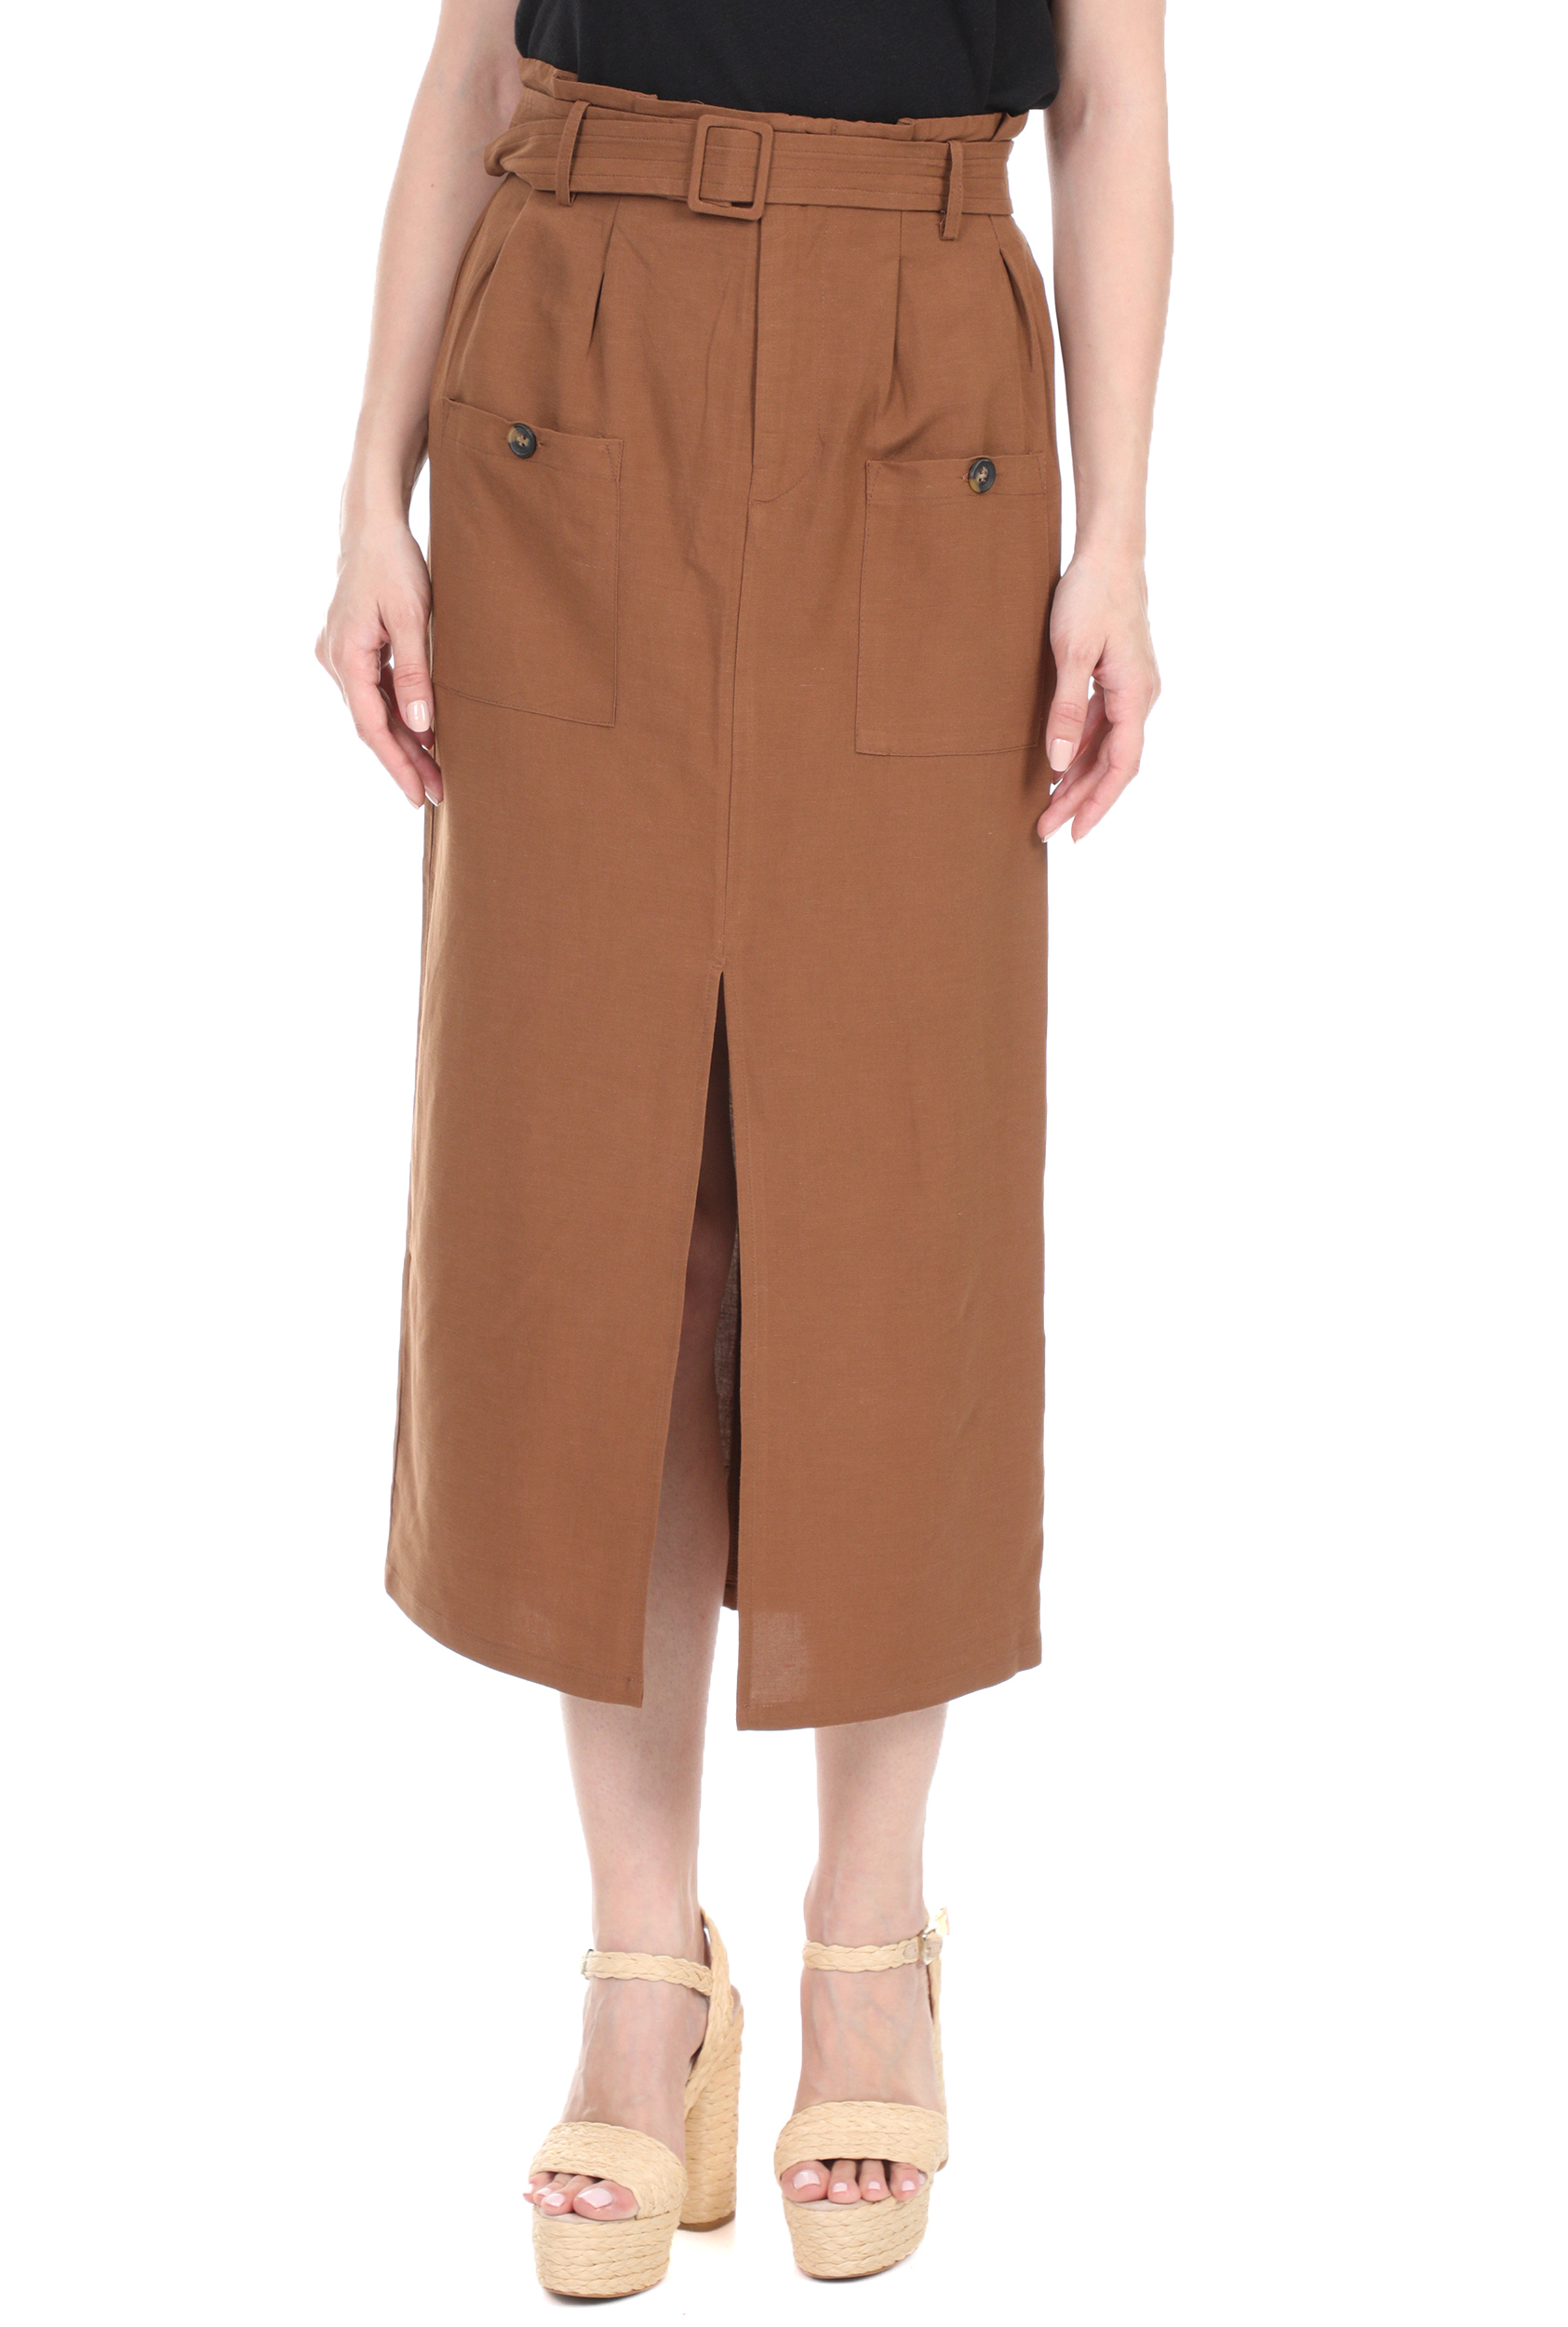 Γυναικεία/Ρούχα/Φούστες/Μέχρι το γόνατο LA DOLLS - Γυναικεία midi φούστα LA DOLLS SAFARI καφέ